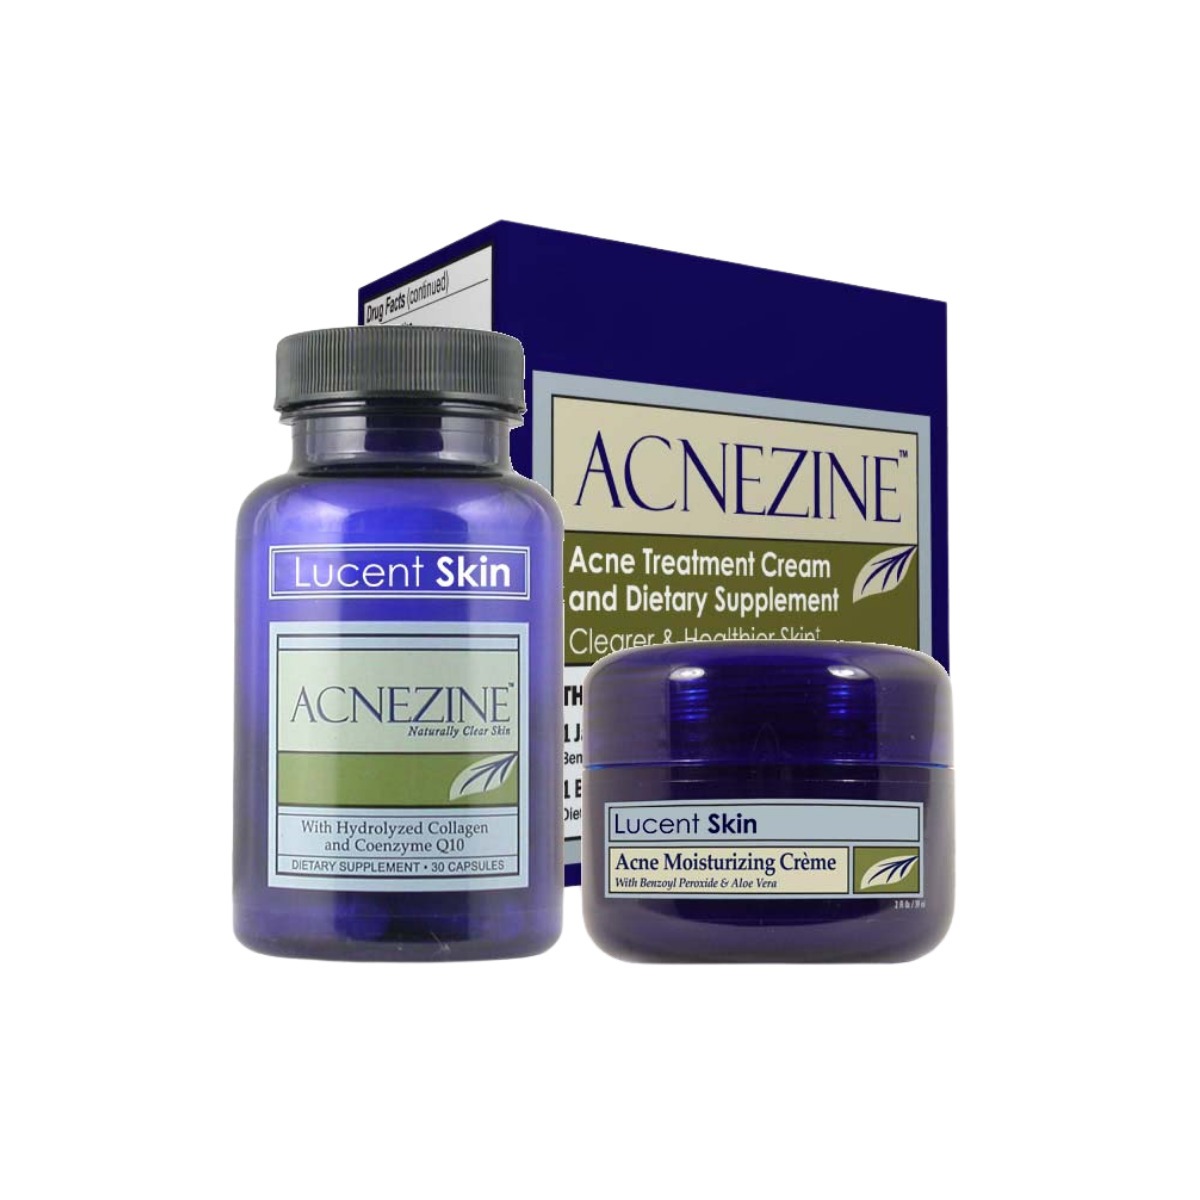 Lucent Skin Acnezine-A Revolutionary Acne Skin Care System